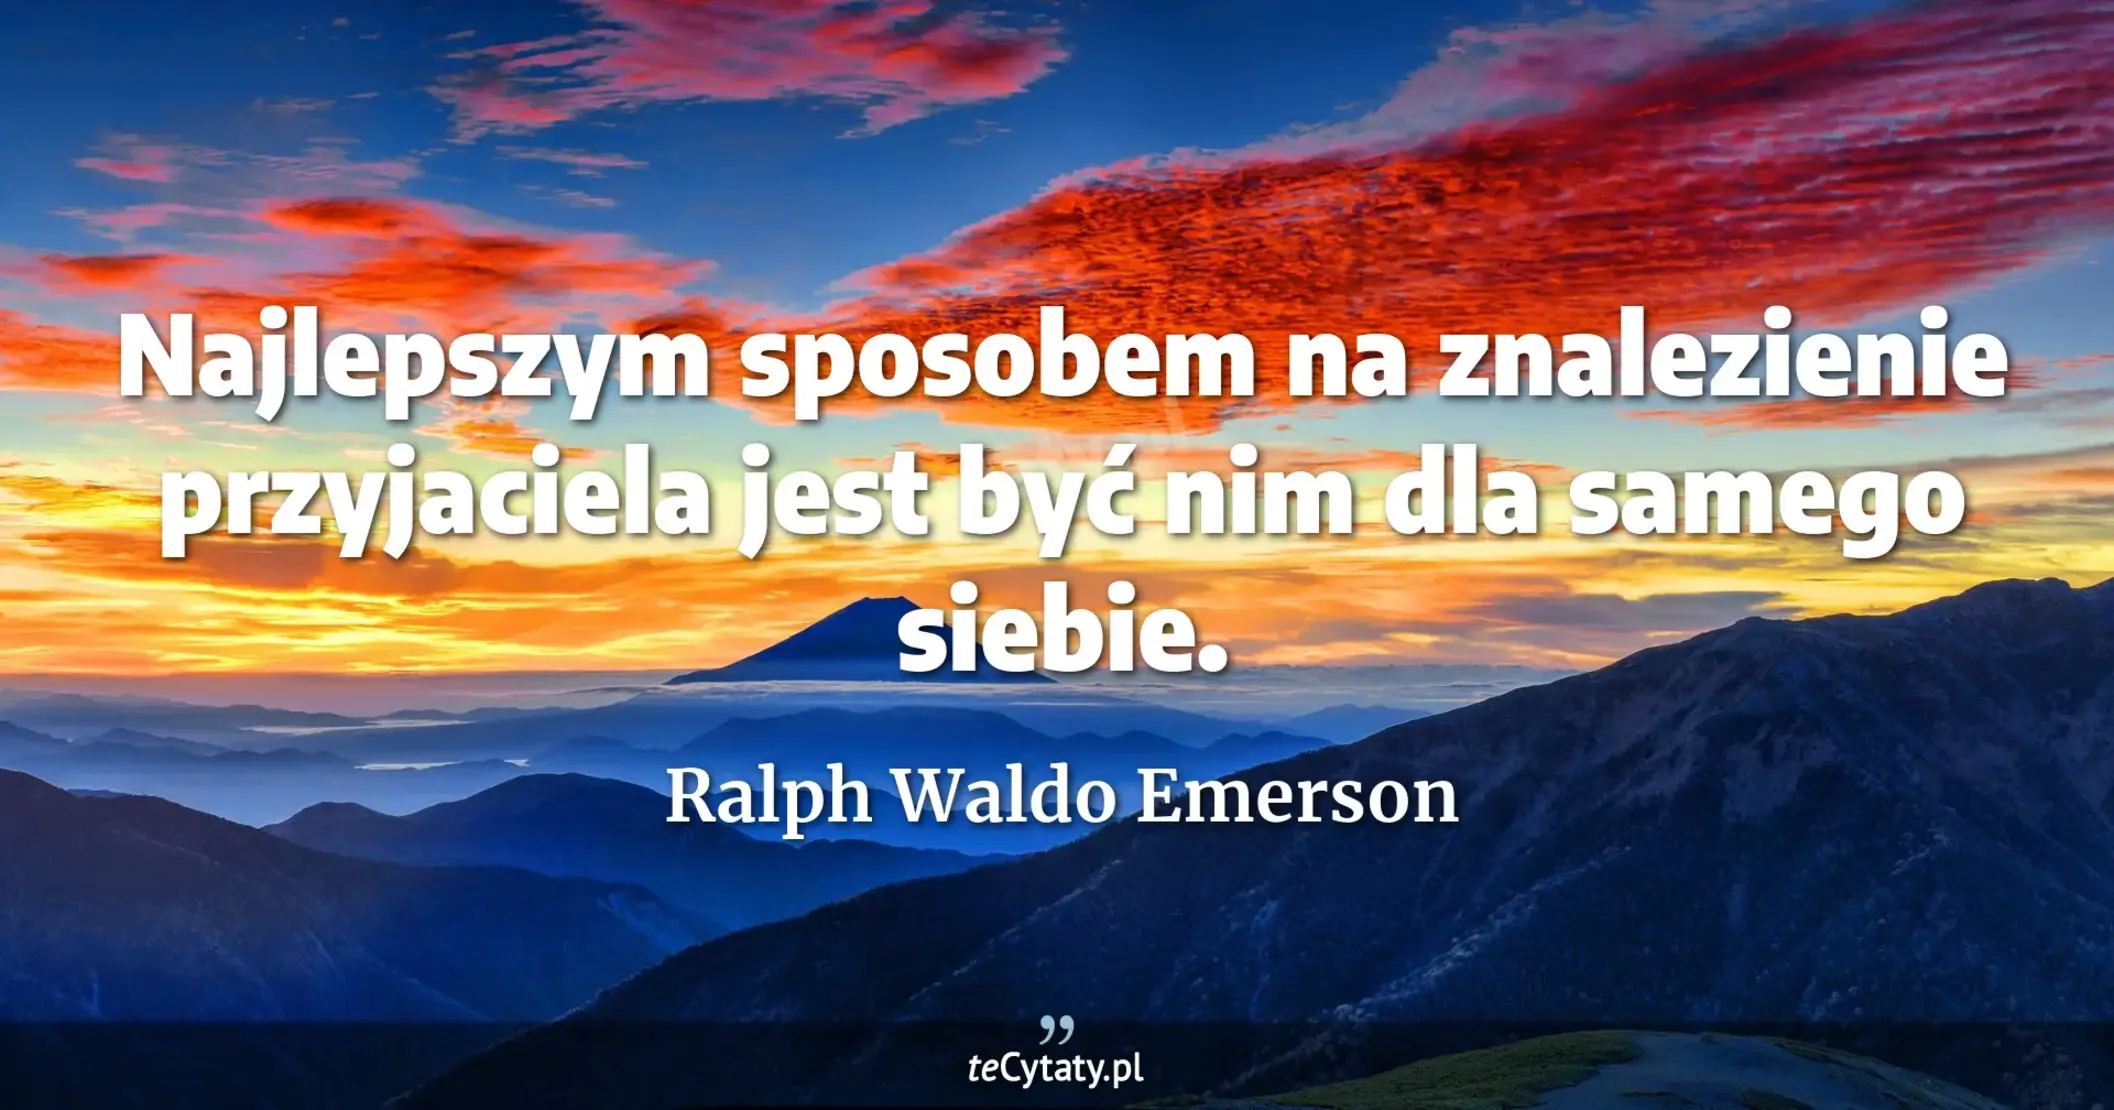 Najlepszym sposobem na znalezienie przyjaciela jest być nim dla samego siebie. - Ralph Waldo Emerson